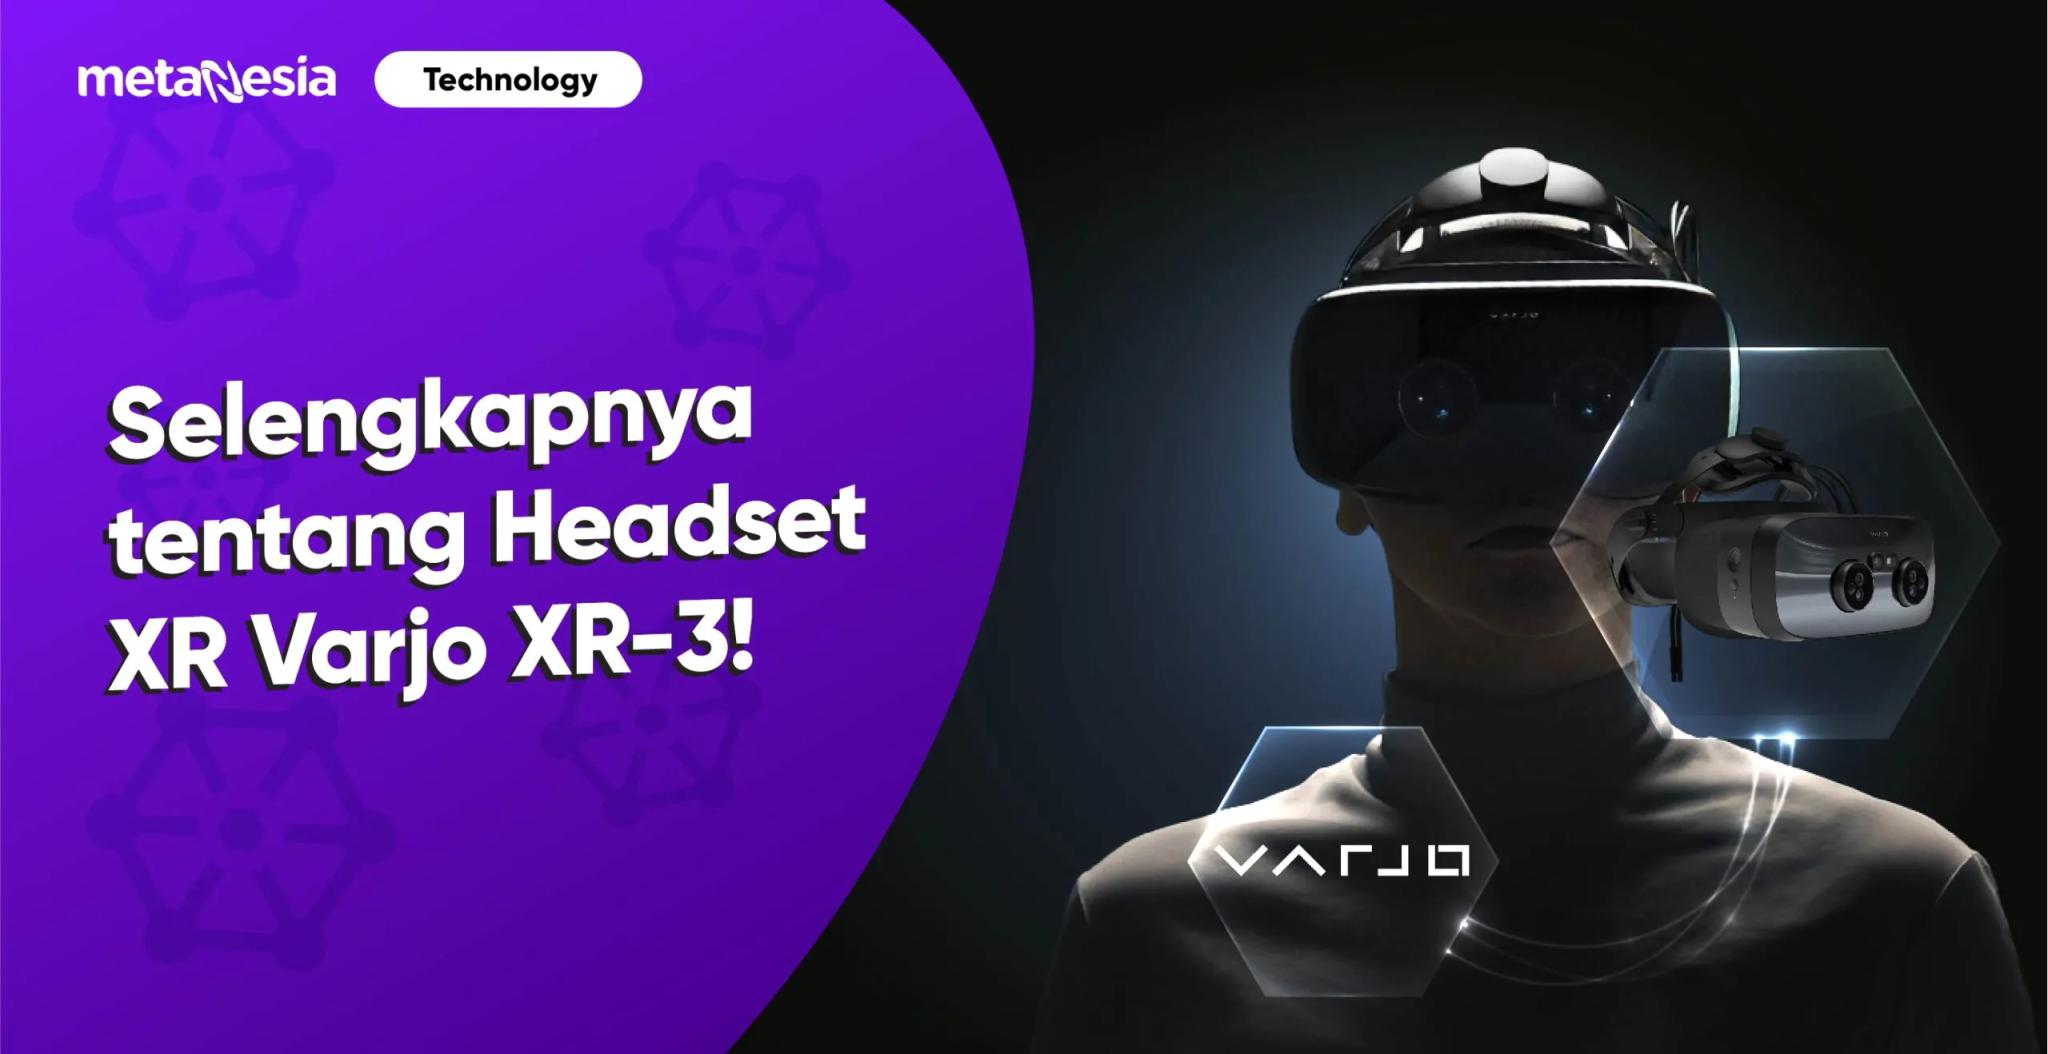 Headset XR Varjo XR-3 dapat Membawa Objek di Dunia Asli kedalam Dunia Virtual!